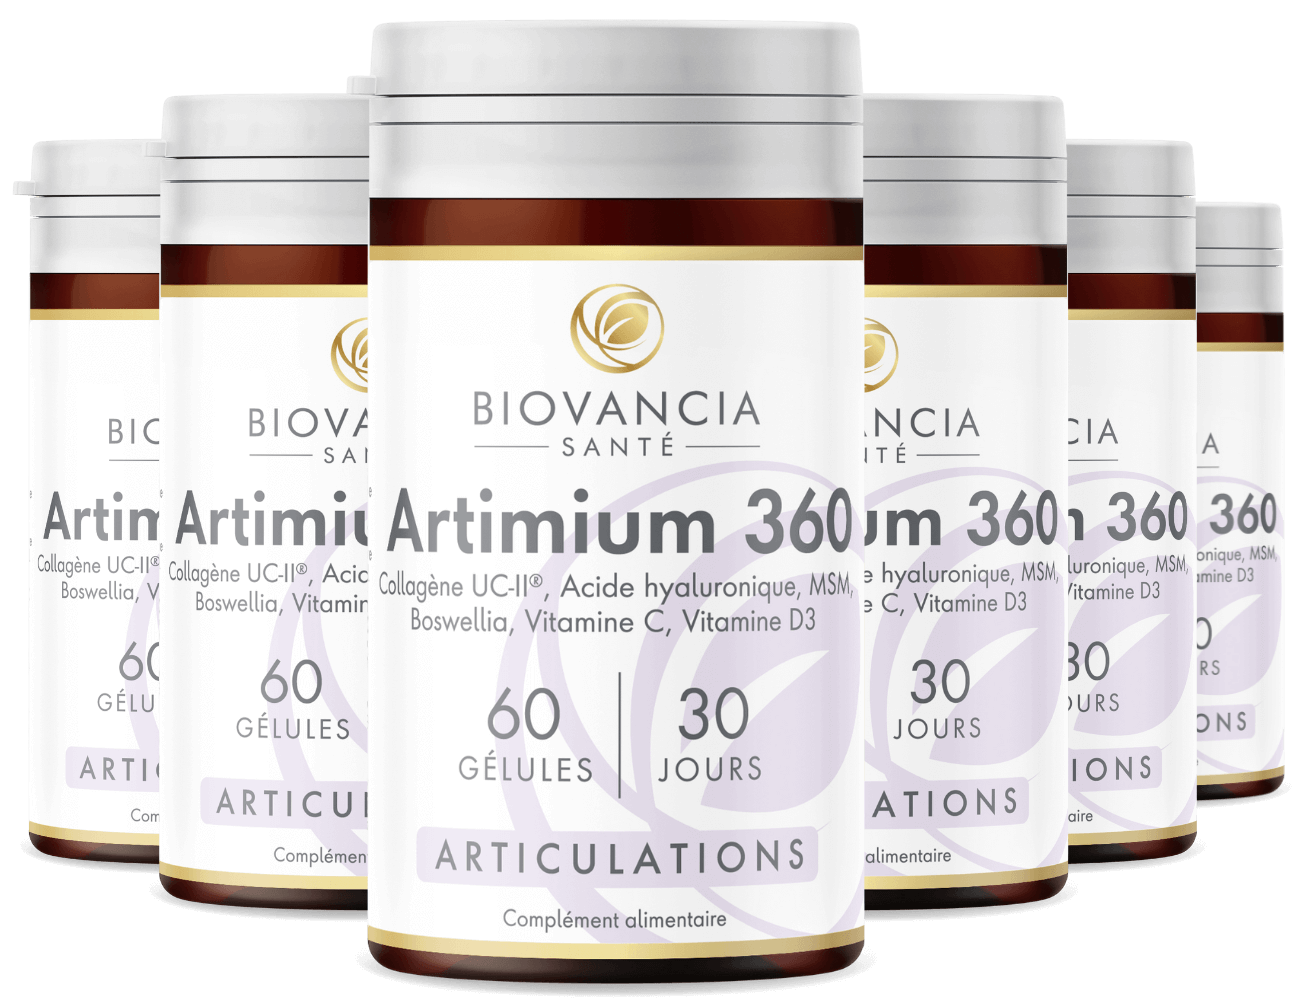 6x Artimium 360, 60 gélules - 30 jours